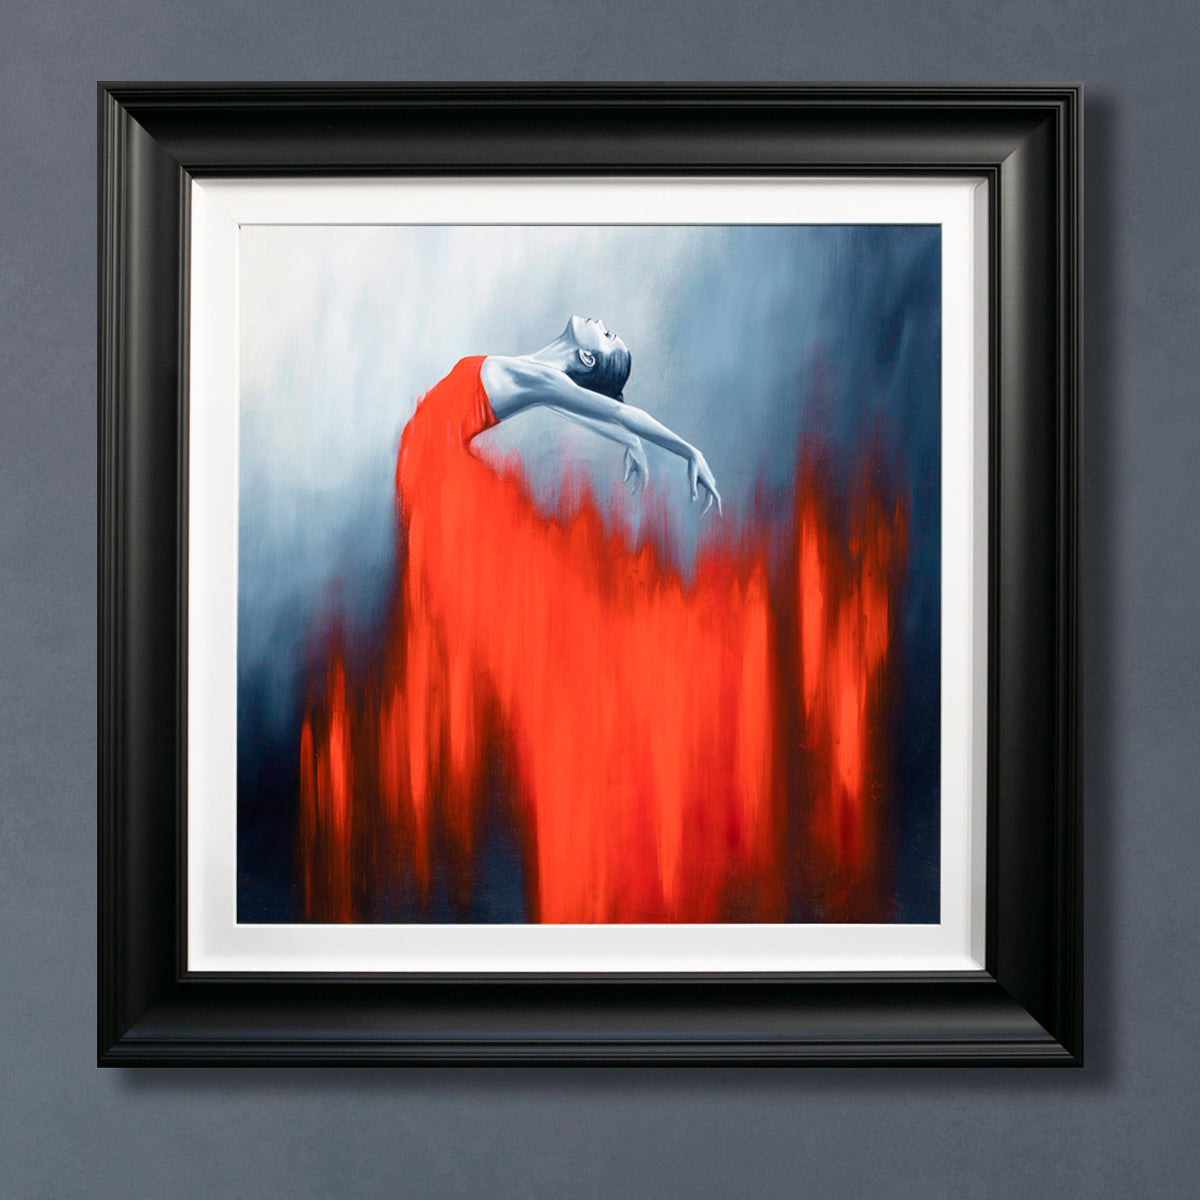 Ben Payne - 'Red Dancer' - Framed Limited Edition